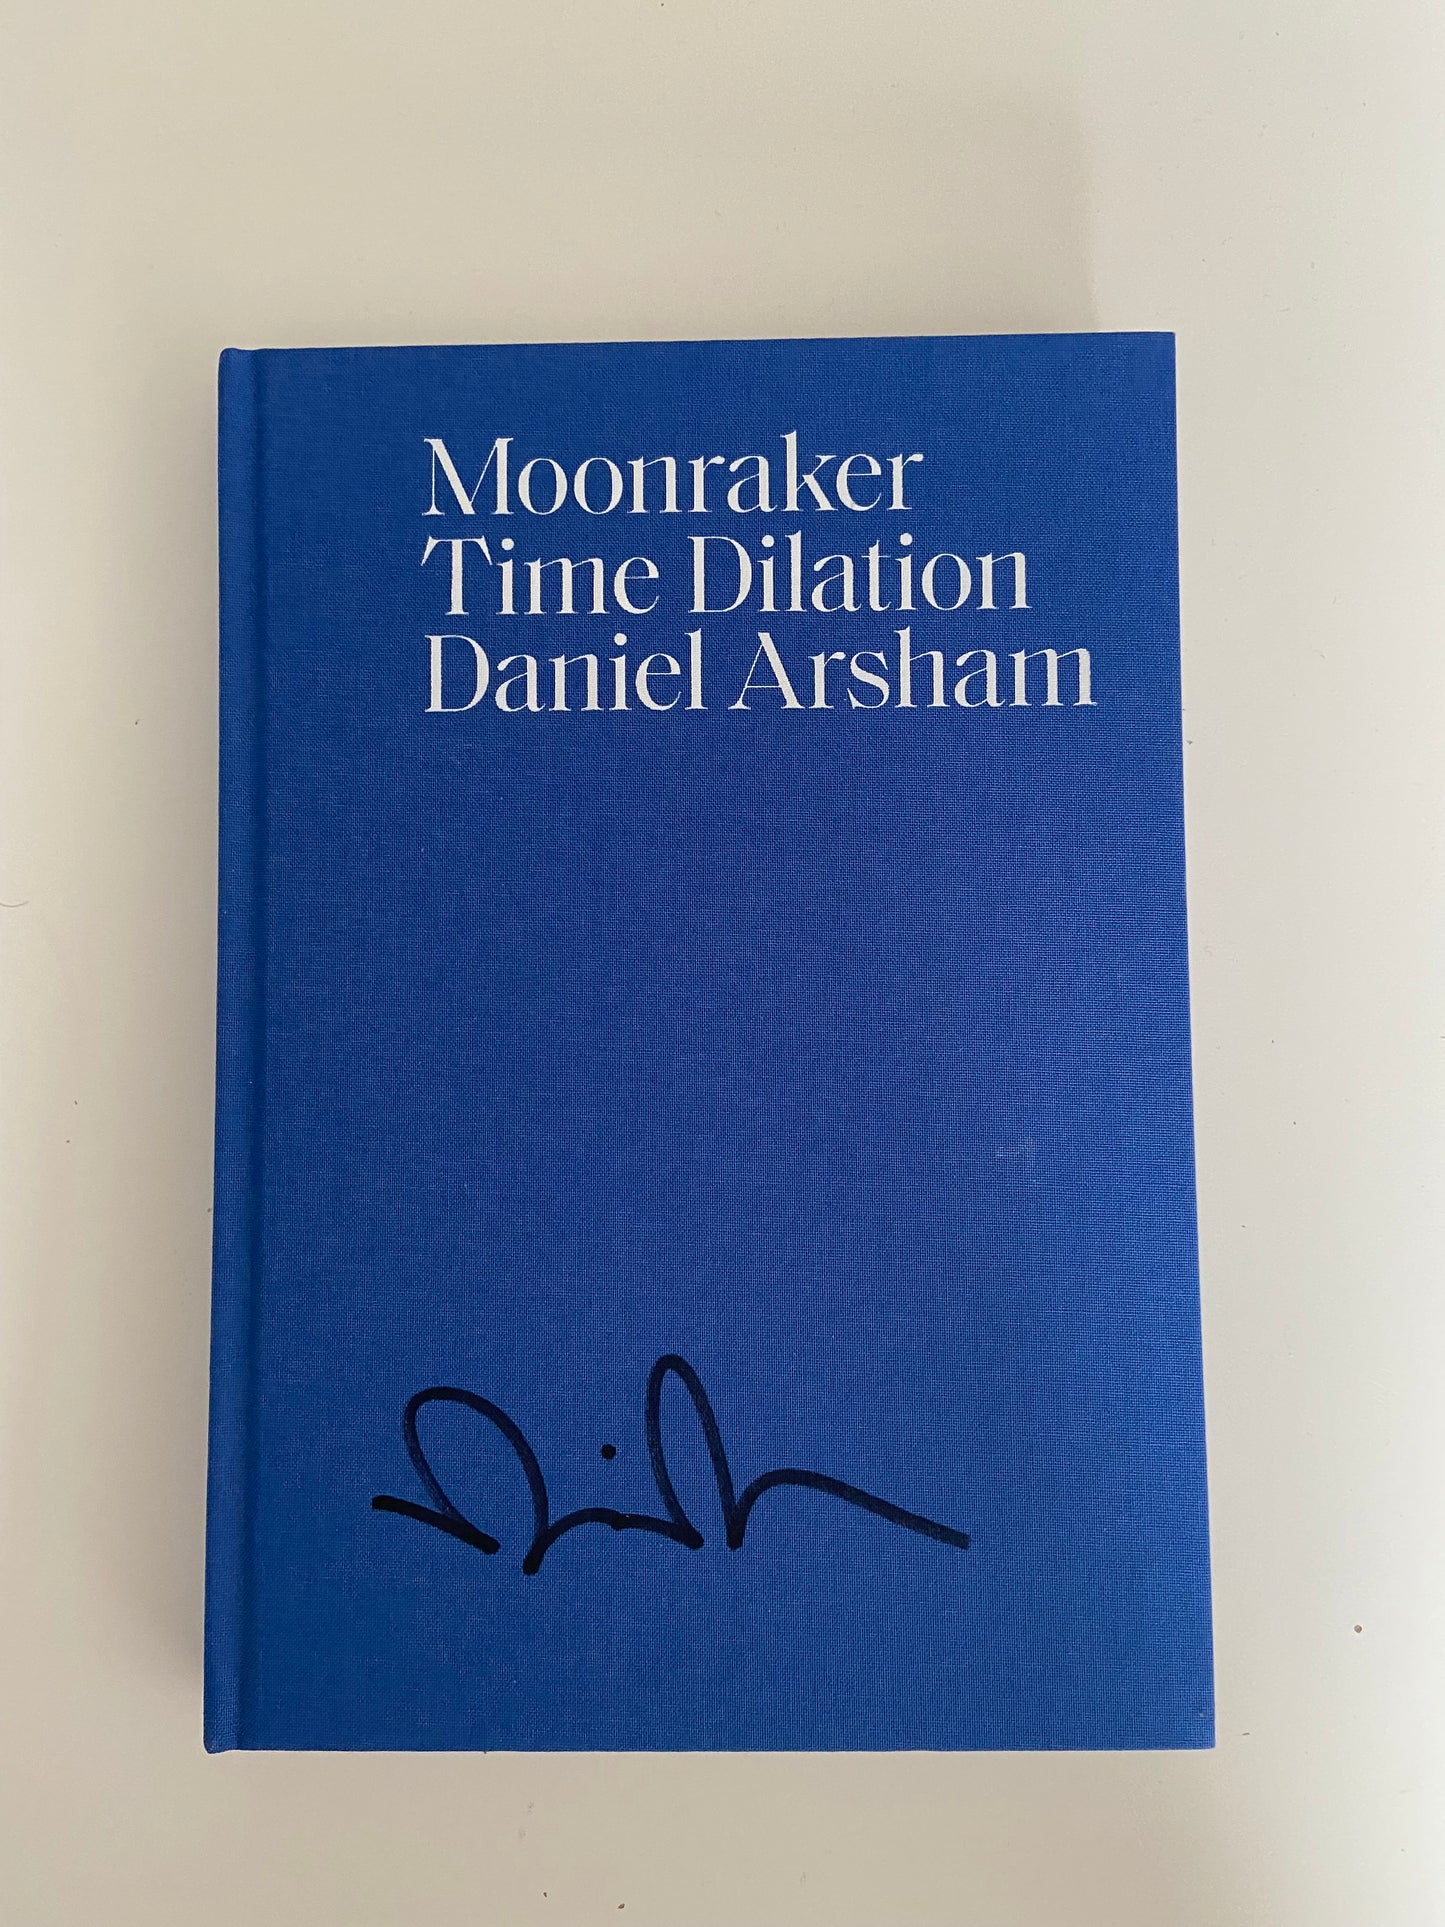 Daniel Arsham Moonraker Time Dilation Signed Book